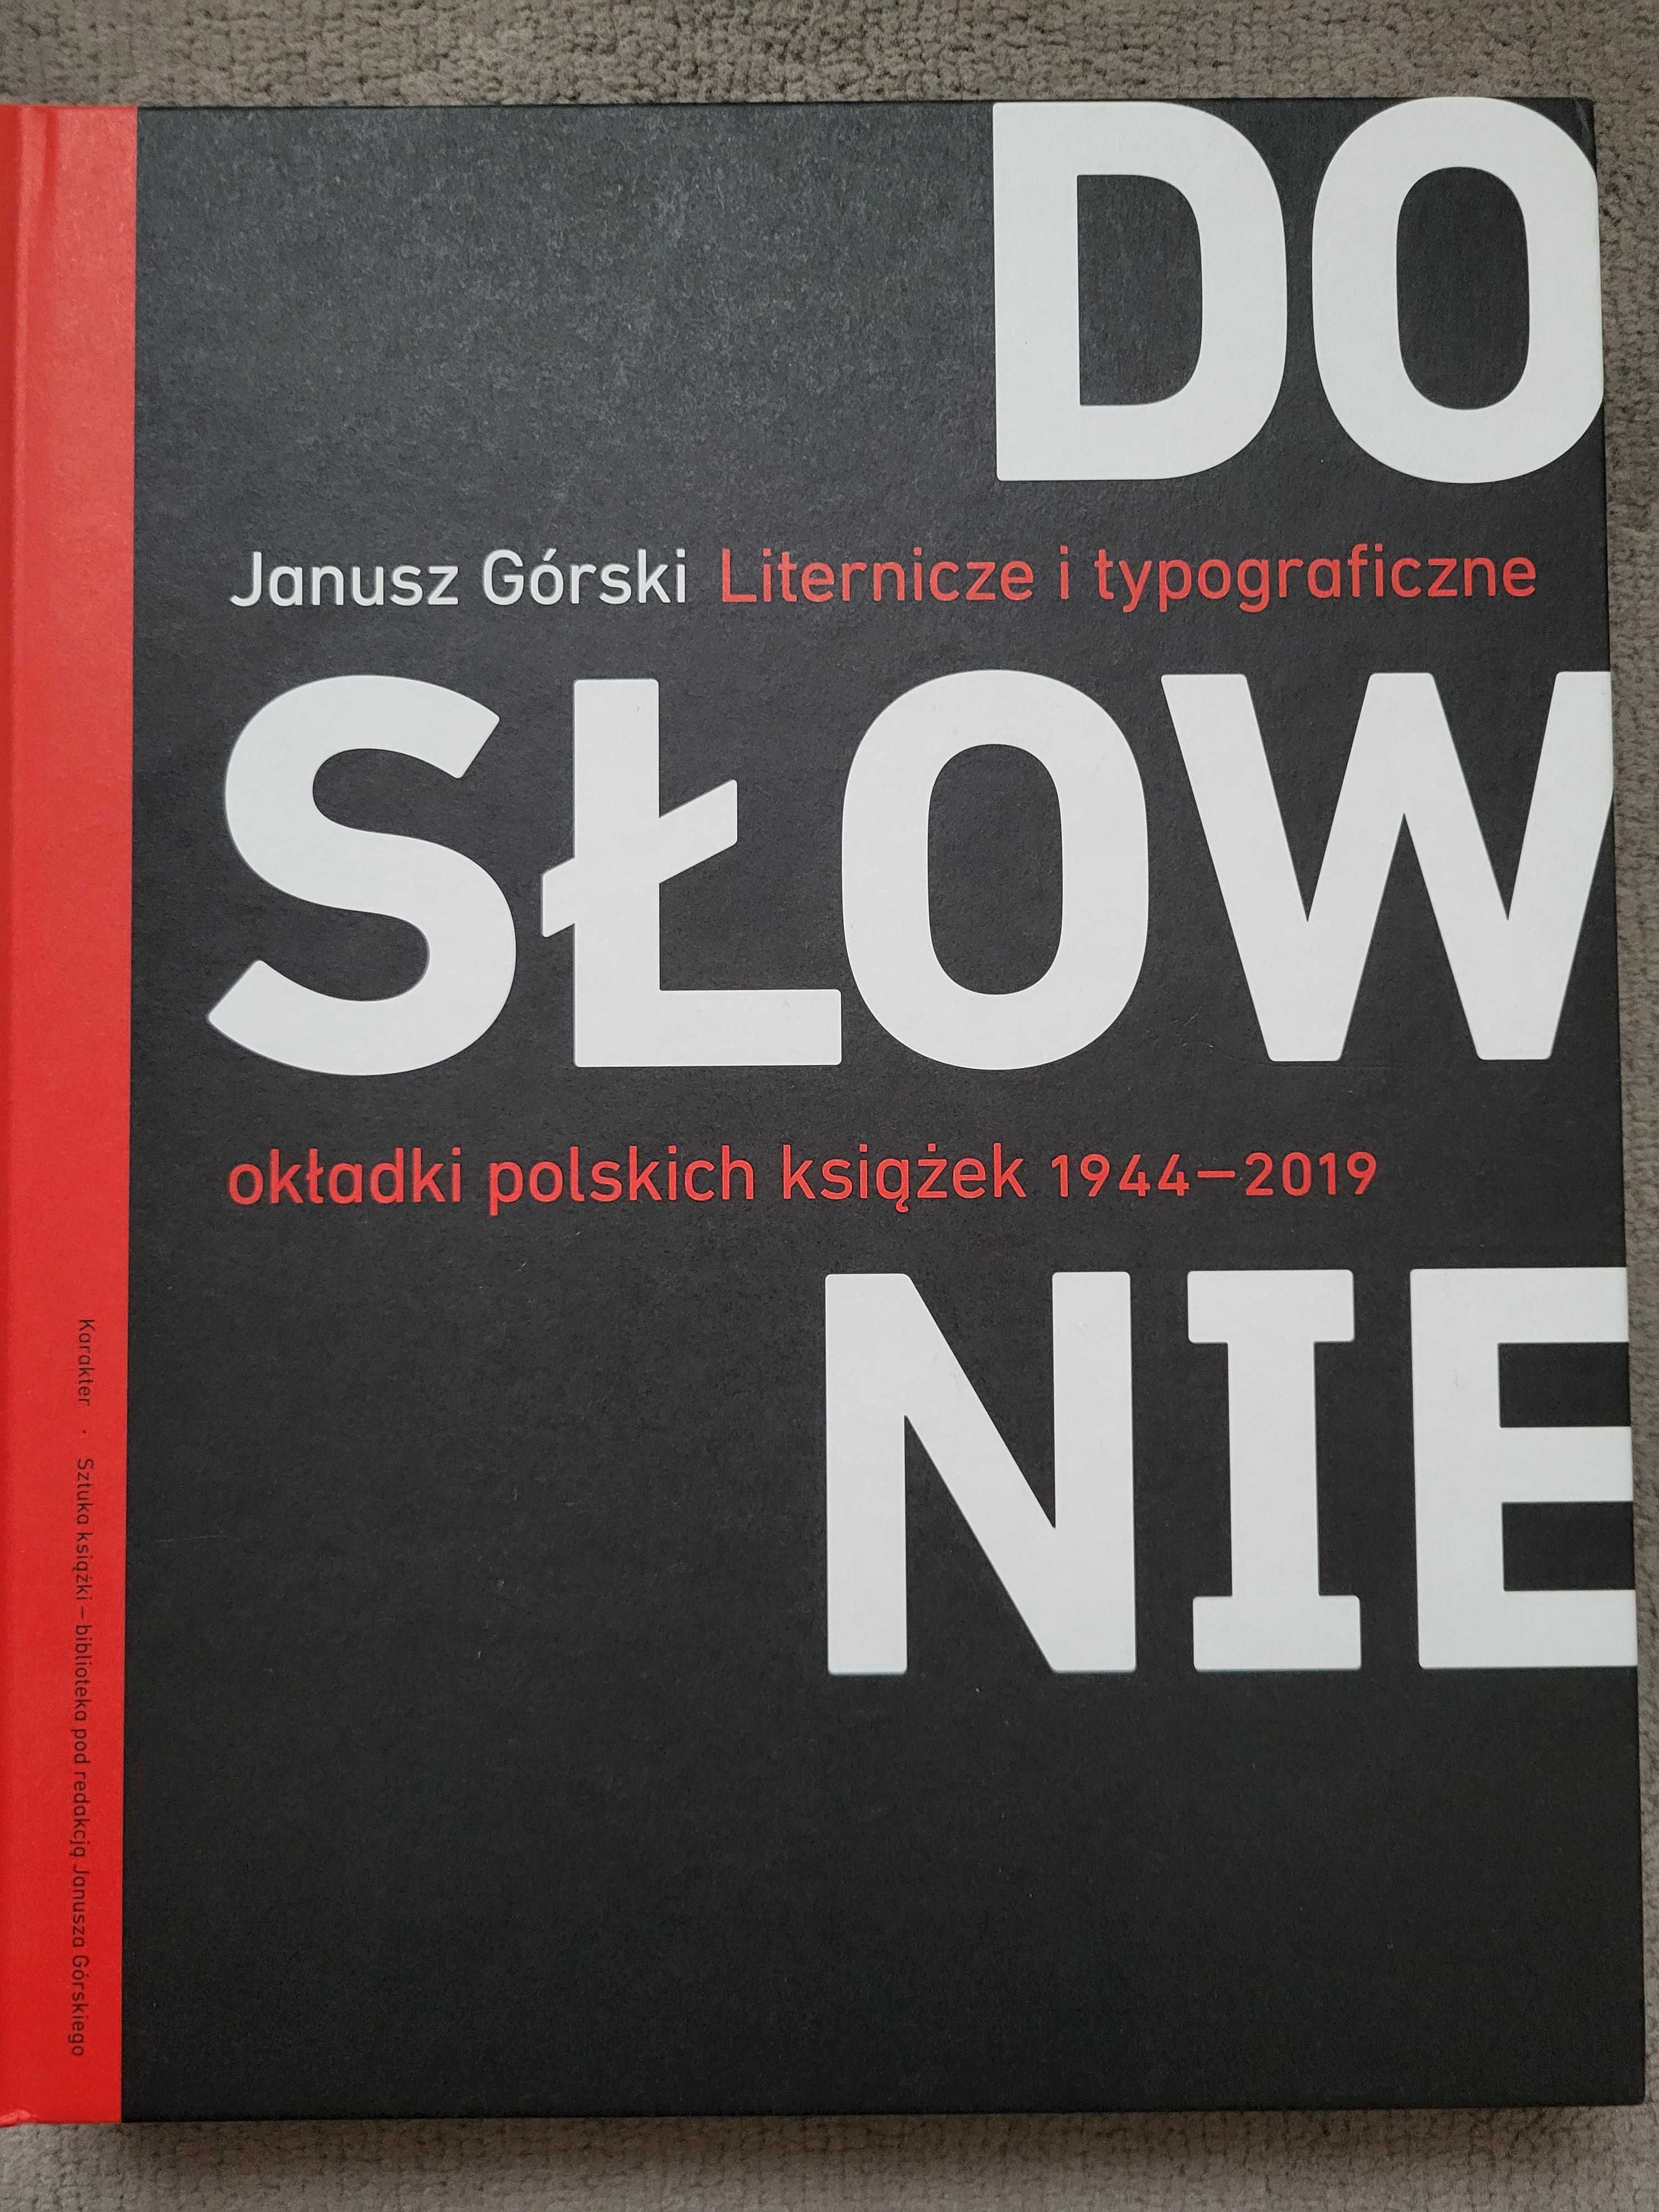 Dosłownie. Liternicze i typograficzne okładki polskich książek...